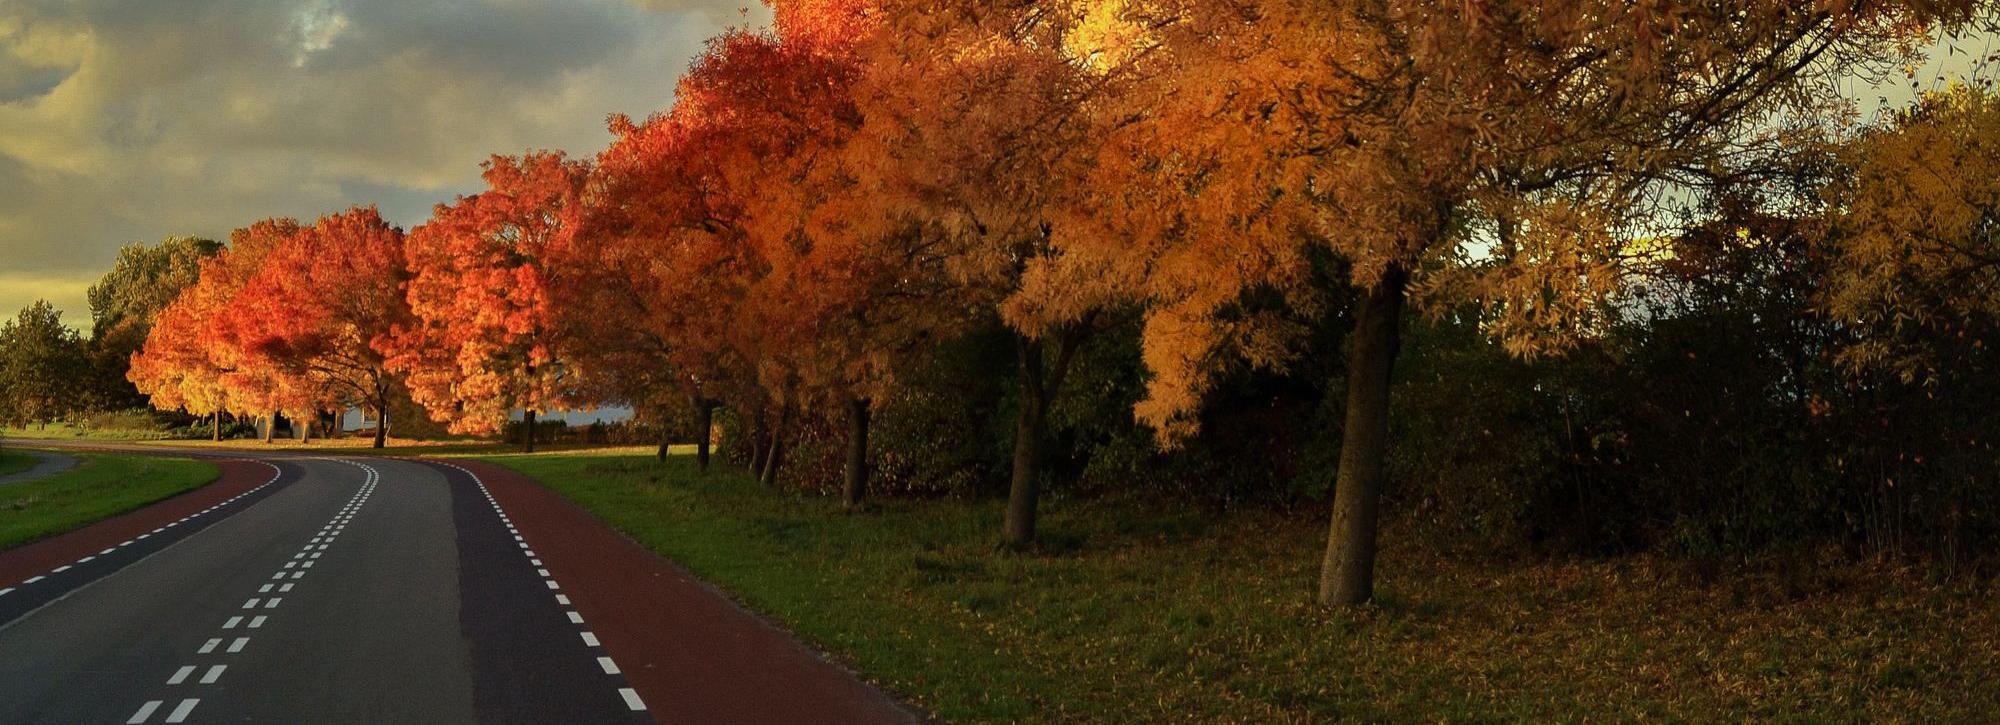 vanilla-autumn-street-trees